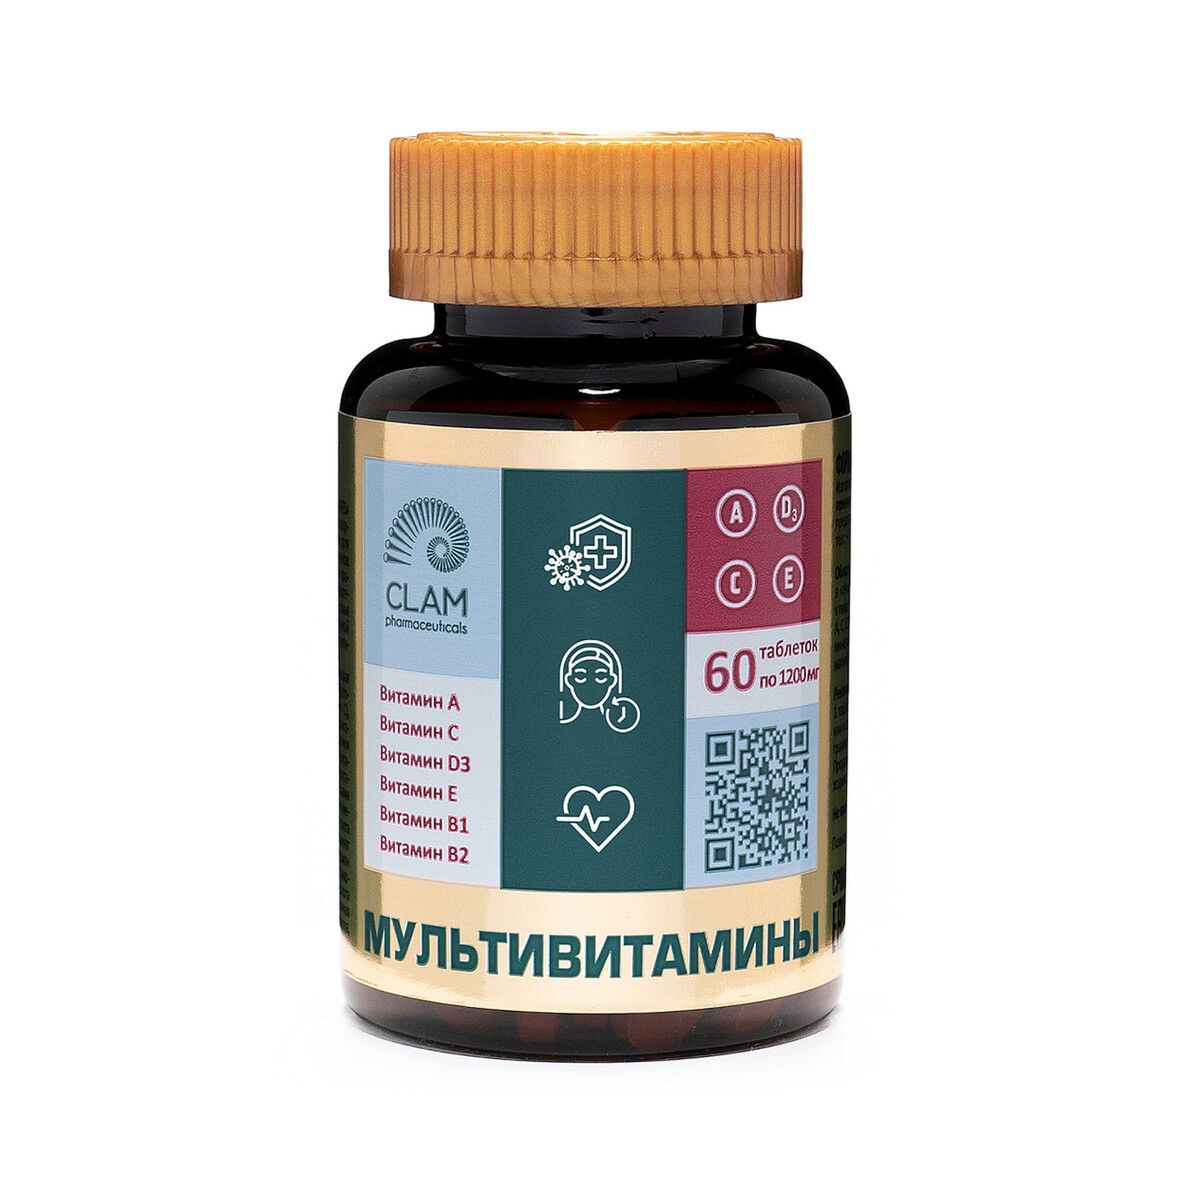 Мультивитамины - anti age, источник витаминов и минералов - комплекс для иммунитета, молодости и красоты - 60 капсул авс хэлси фуд комплекс кальций витамин д3 мармеладные пастилки 60